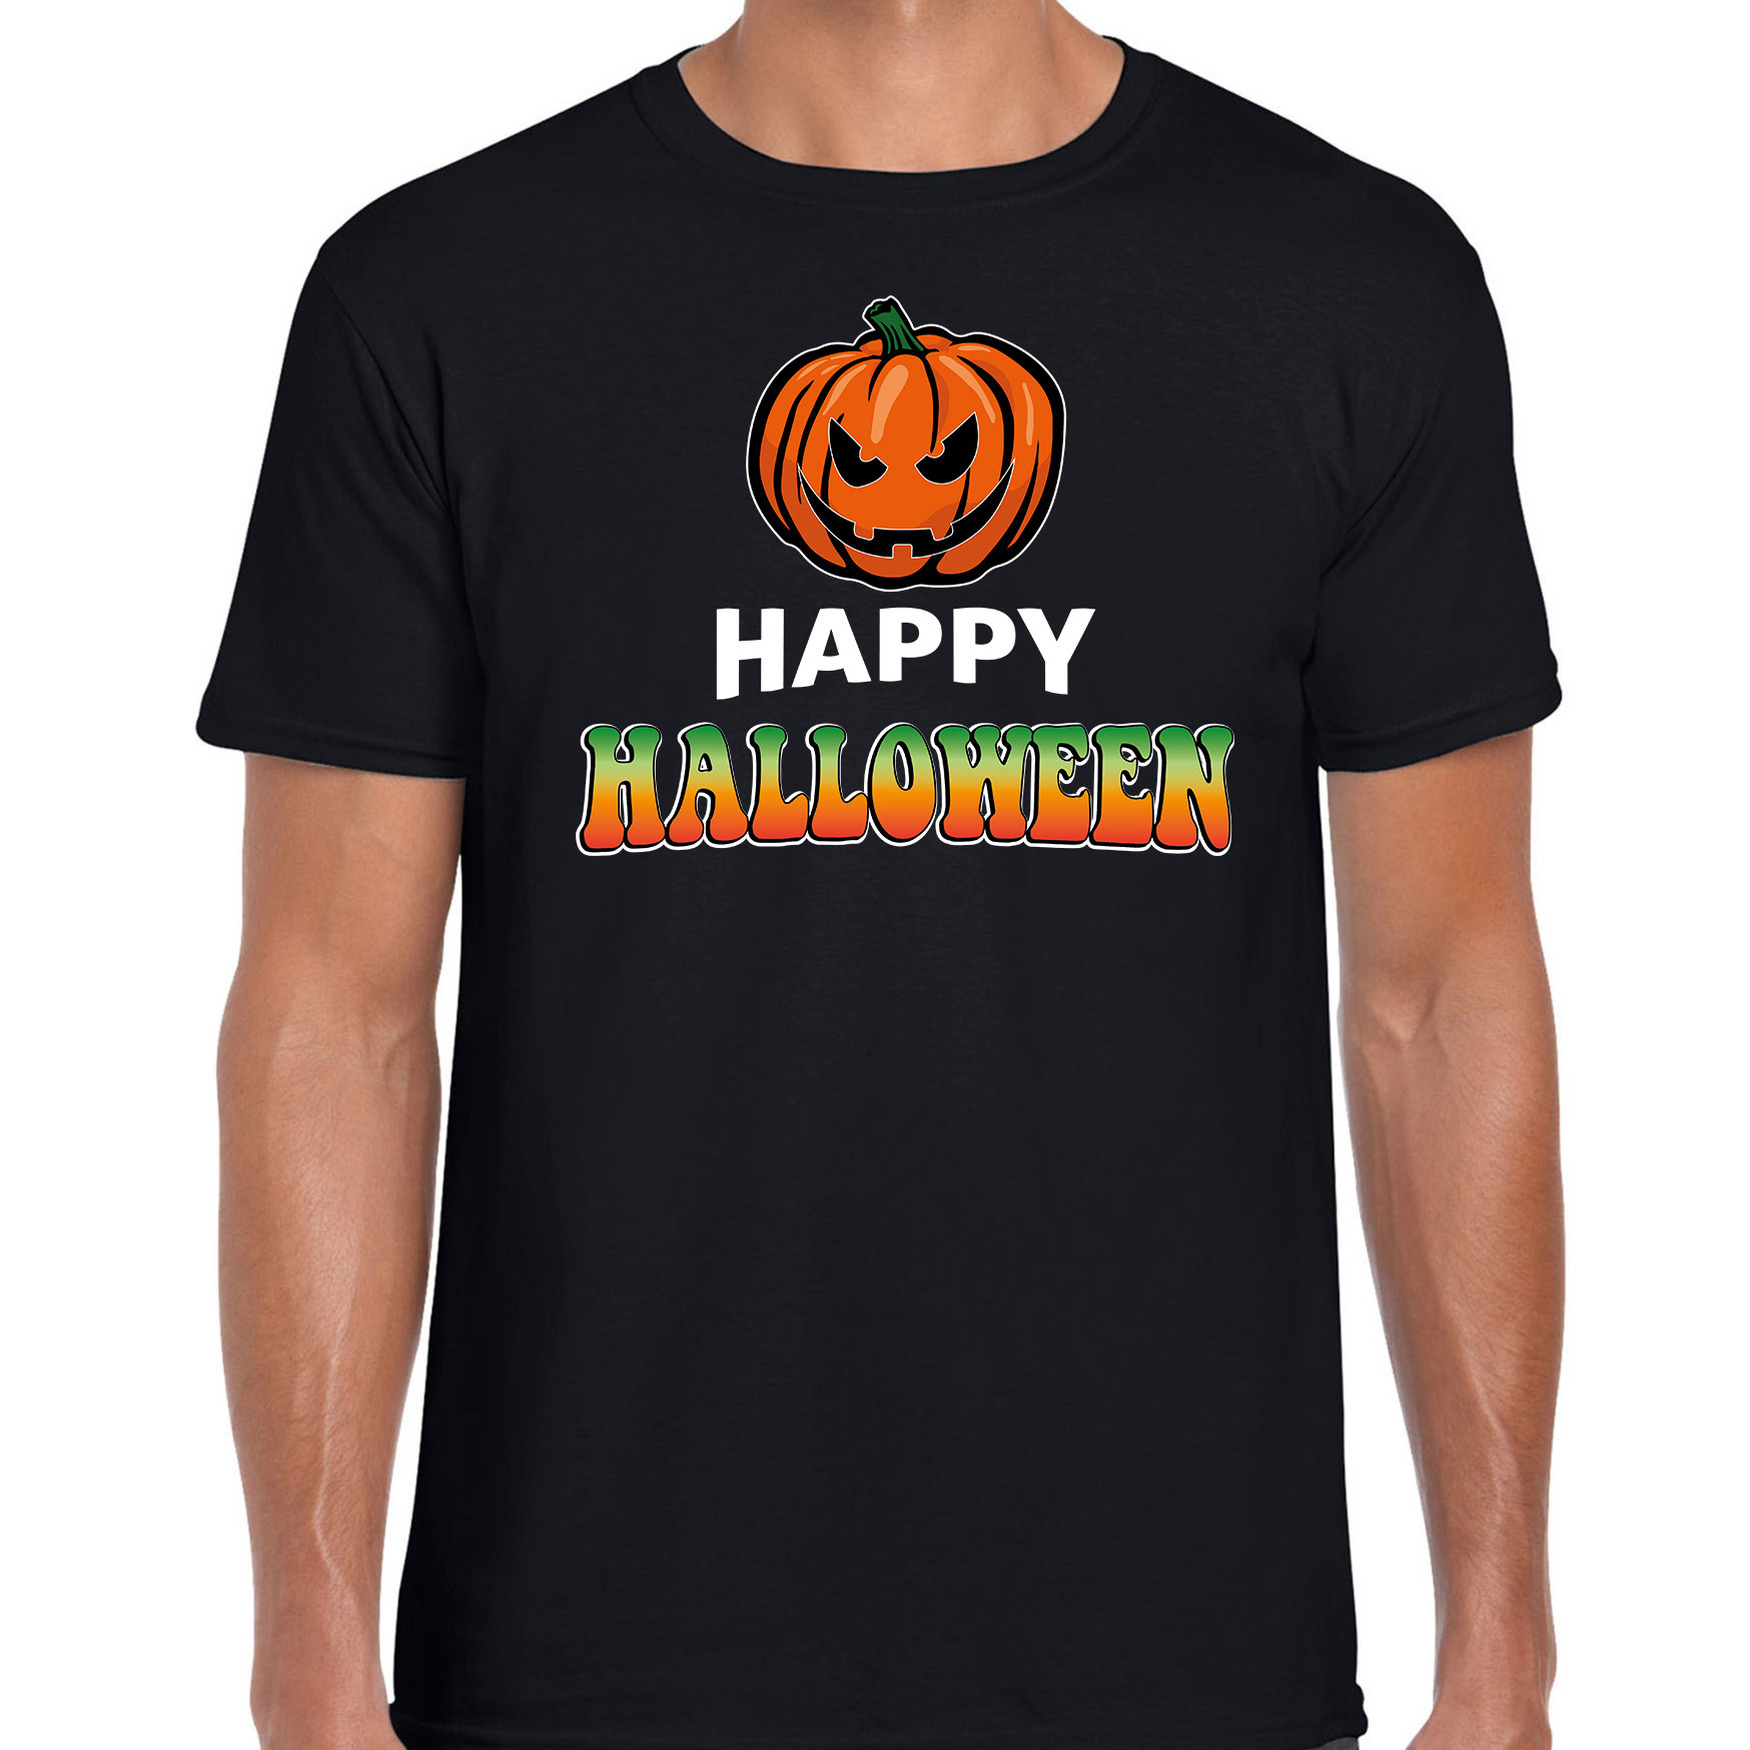 Pompoen / happy halloween verkleed t-shirt zwart voor heren